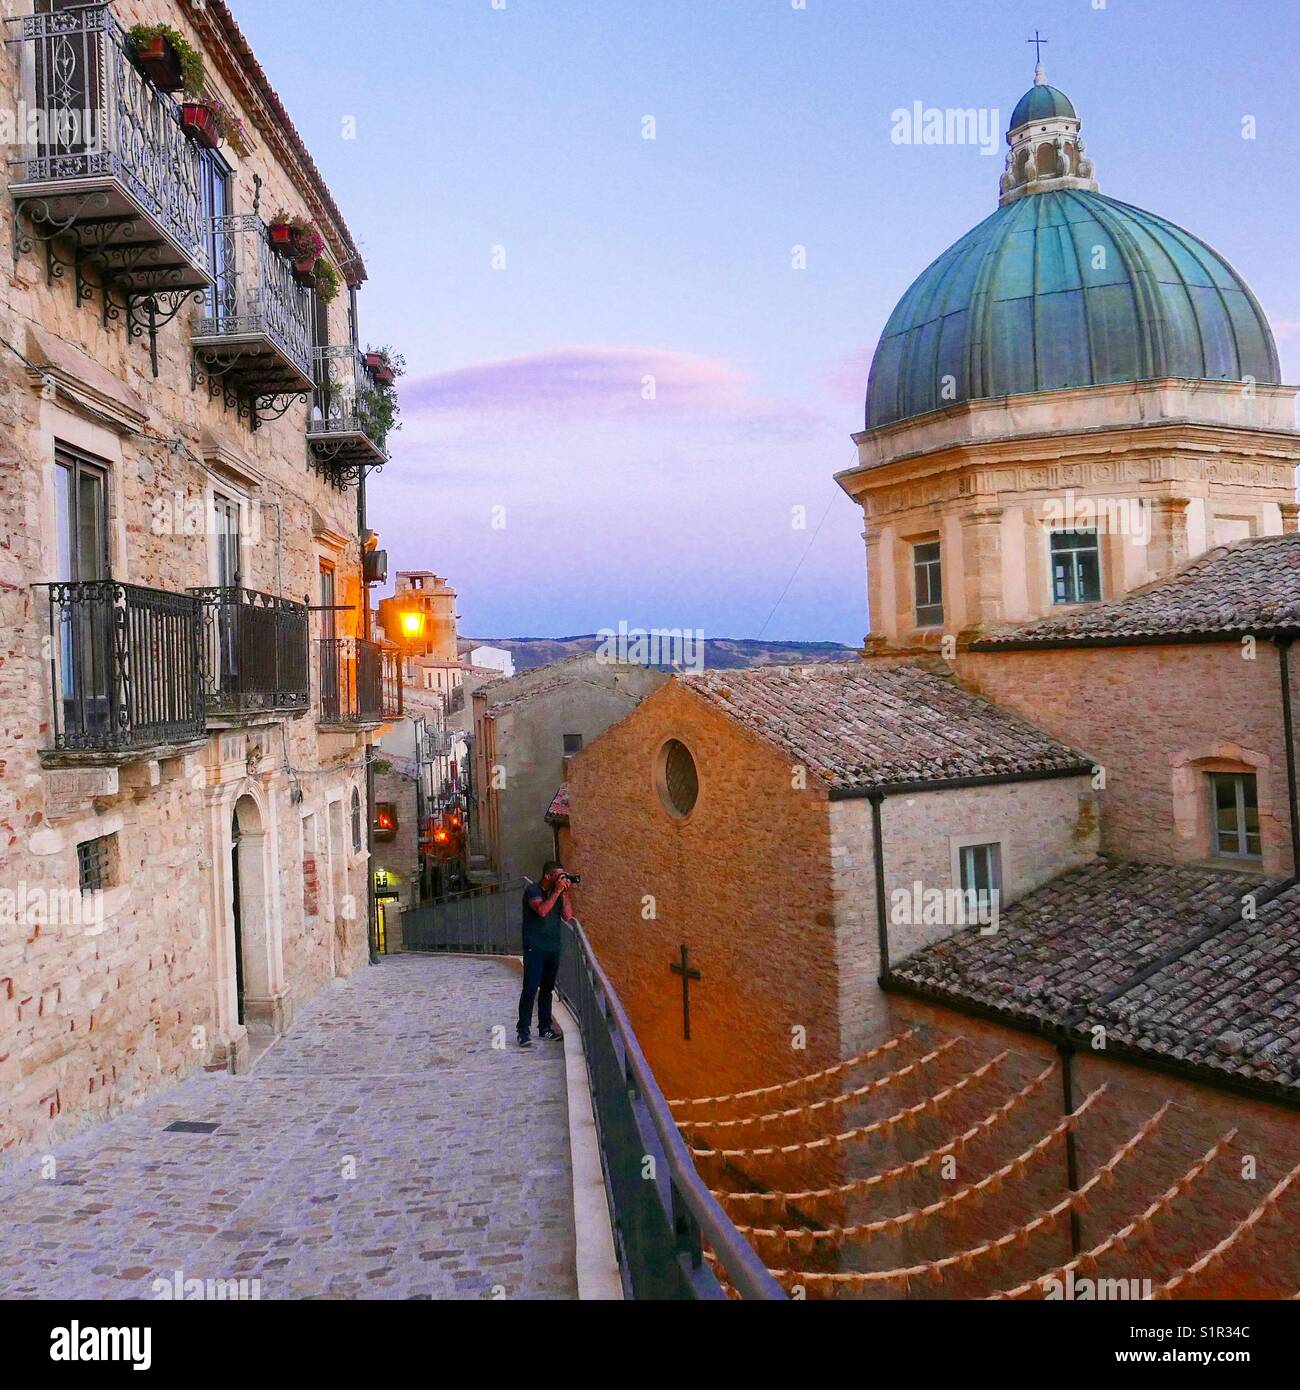 Marche à travers les rues étroites de l'ancien village sicilien de Gangi, avec le dôme de la Cathédrale sur la droite, illuminé par les couleurs du coucher de soleil. Gangi, Palerme, Sicile. L'Italie. Banque D'Images